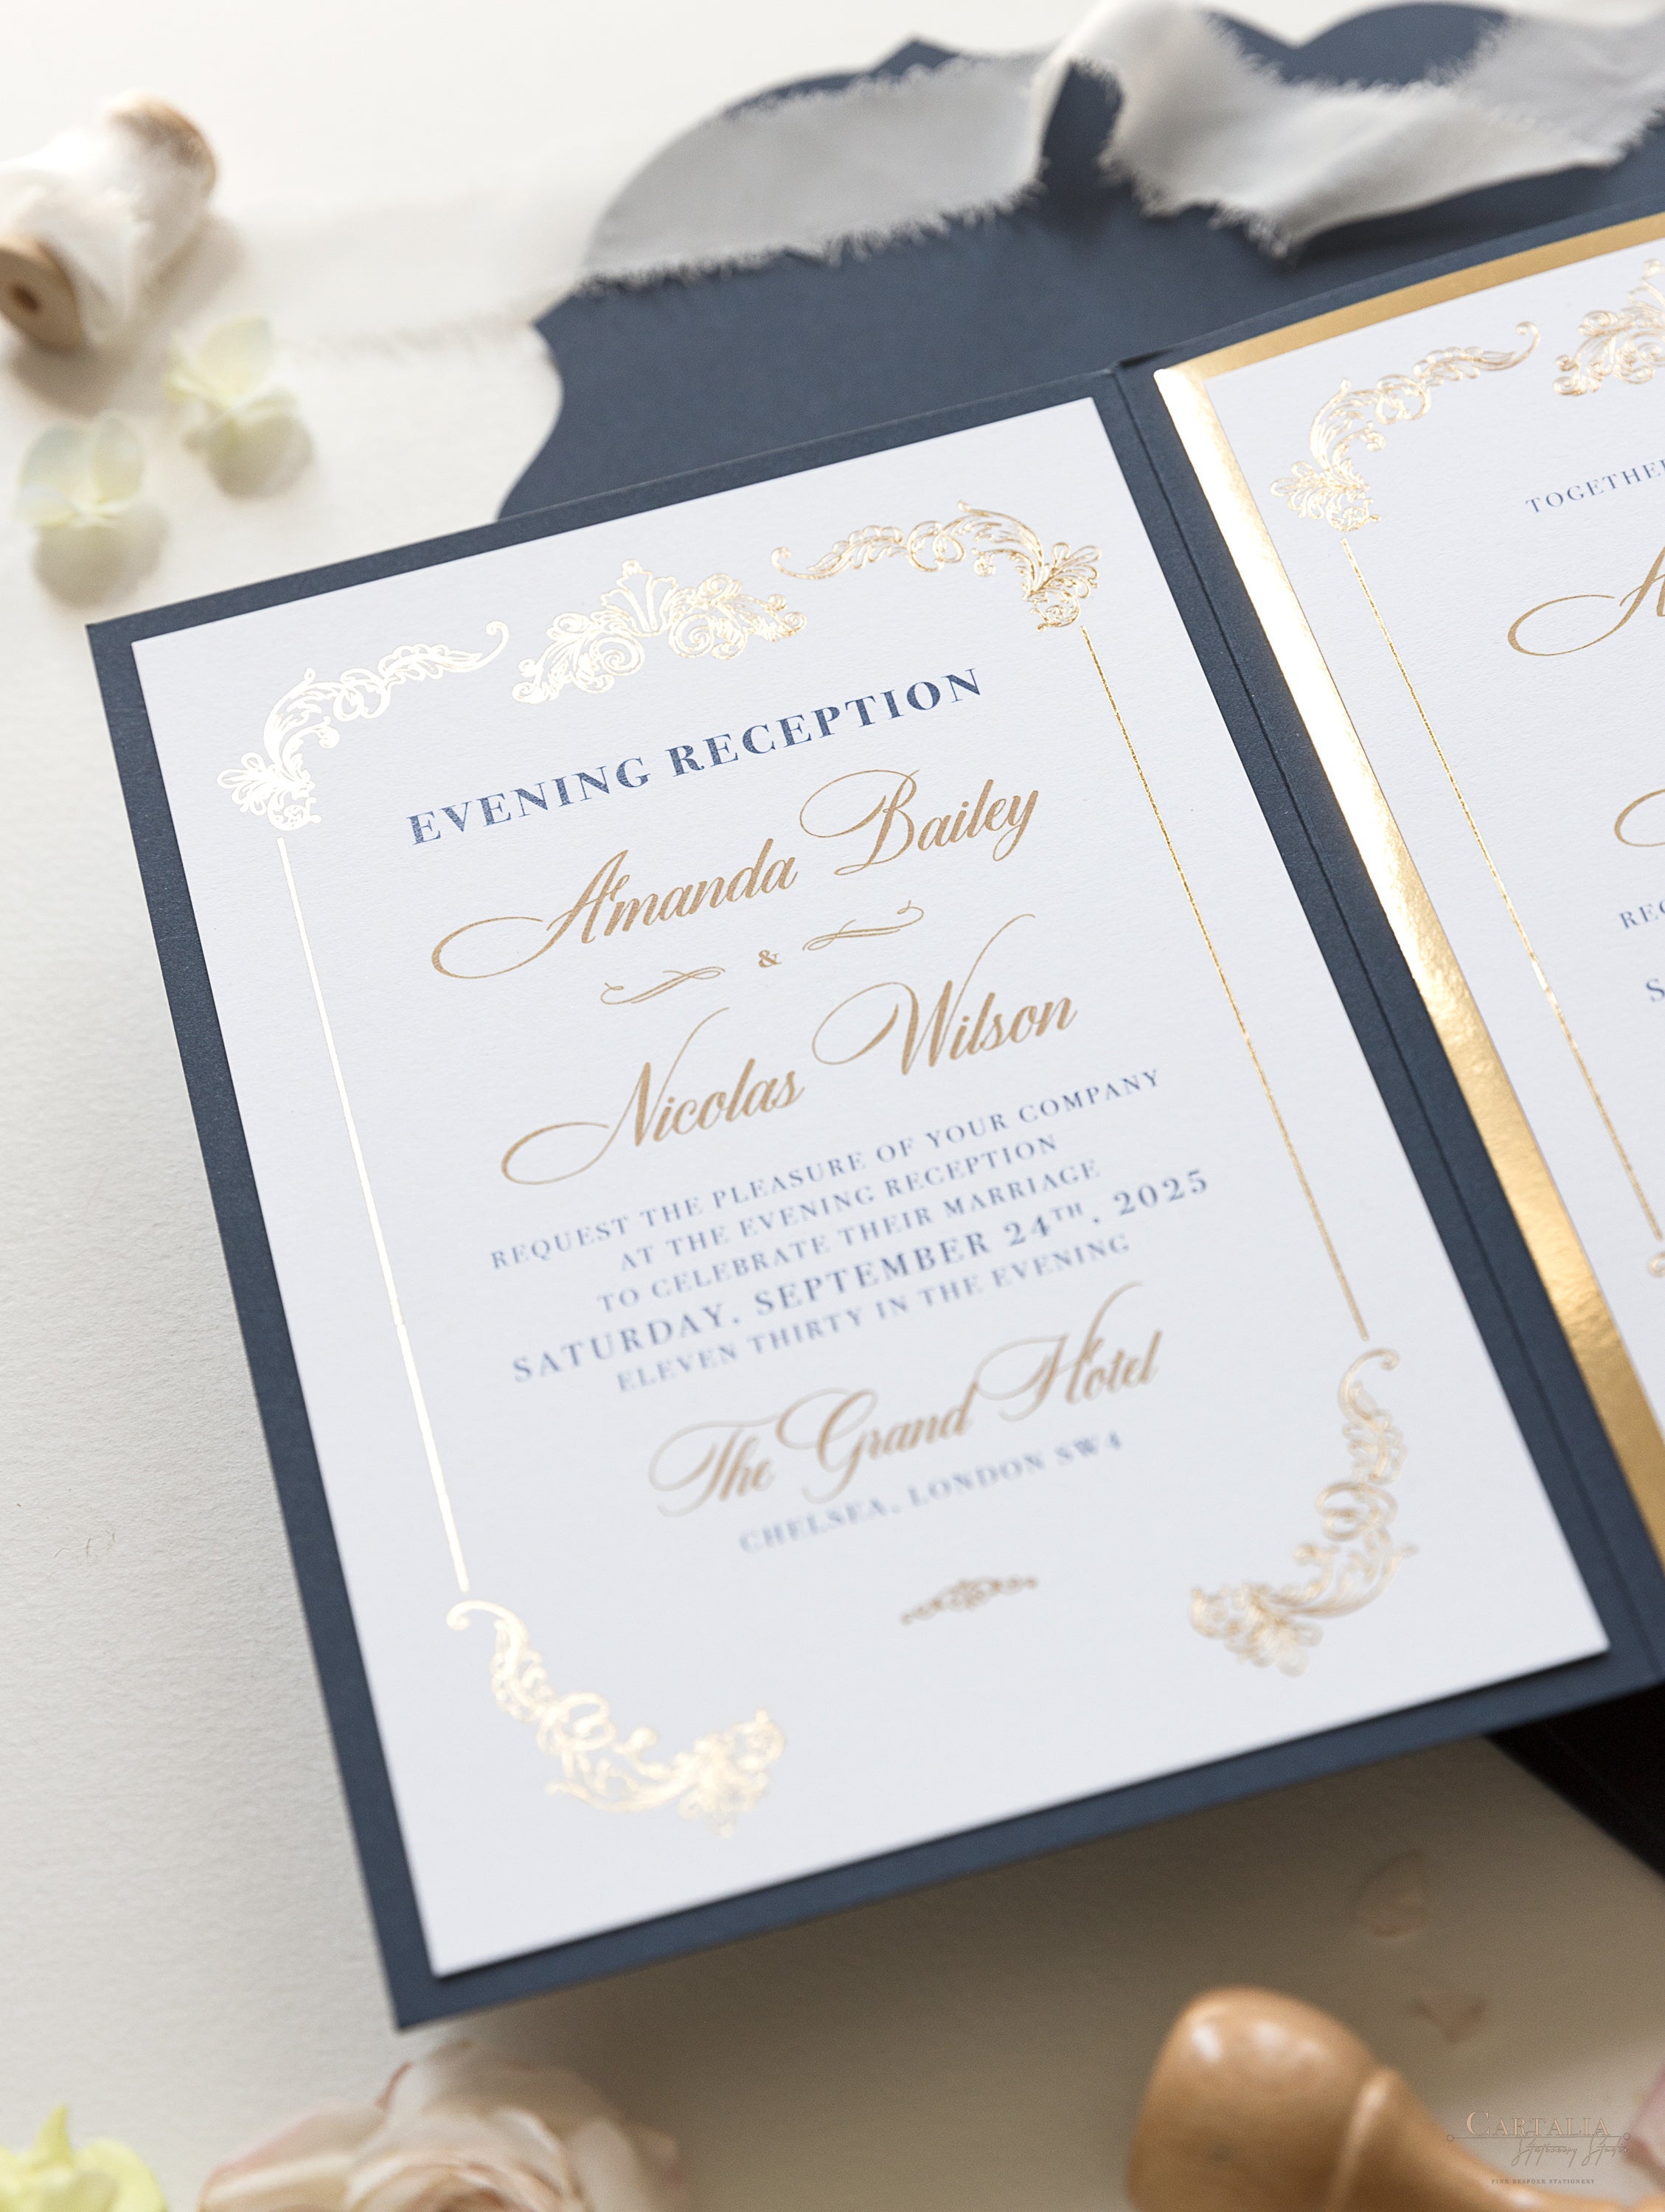 Navy & Gold Monogram Classic Pocket Monogram Wedding Invitation Suite –  Cartalia